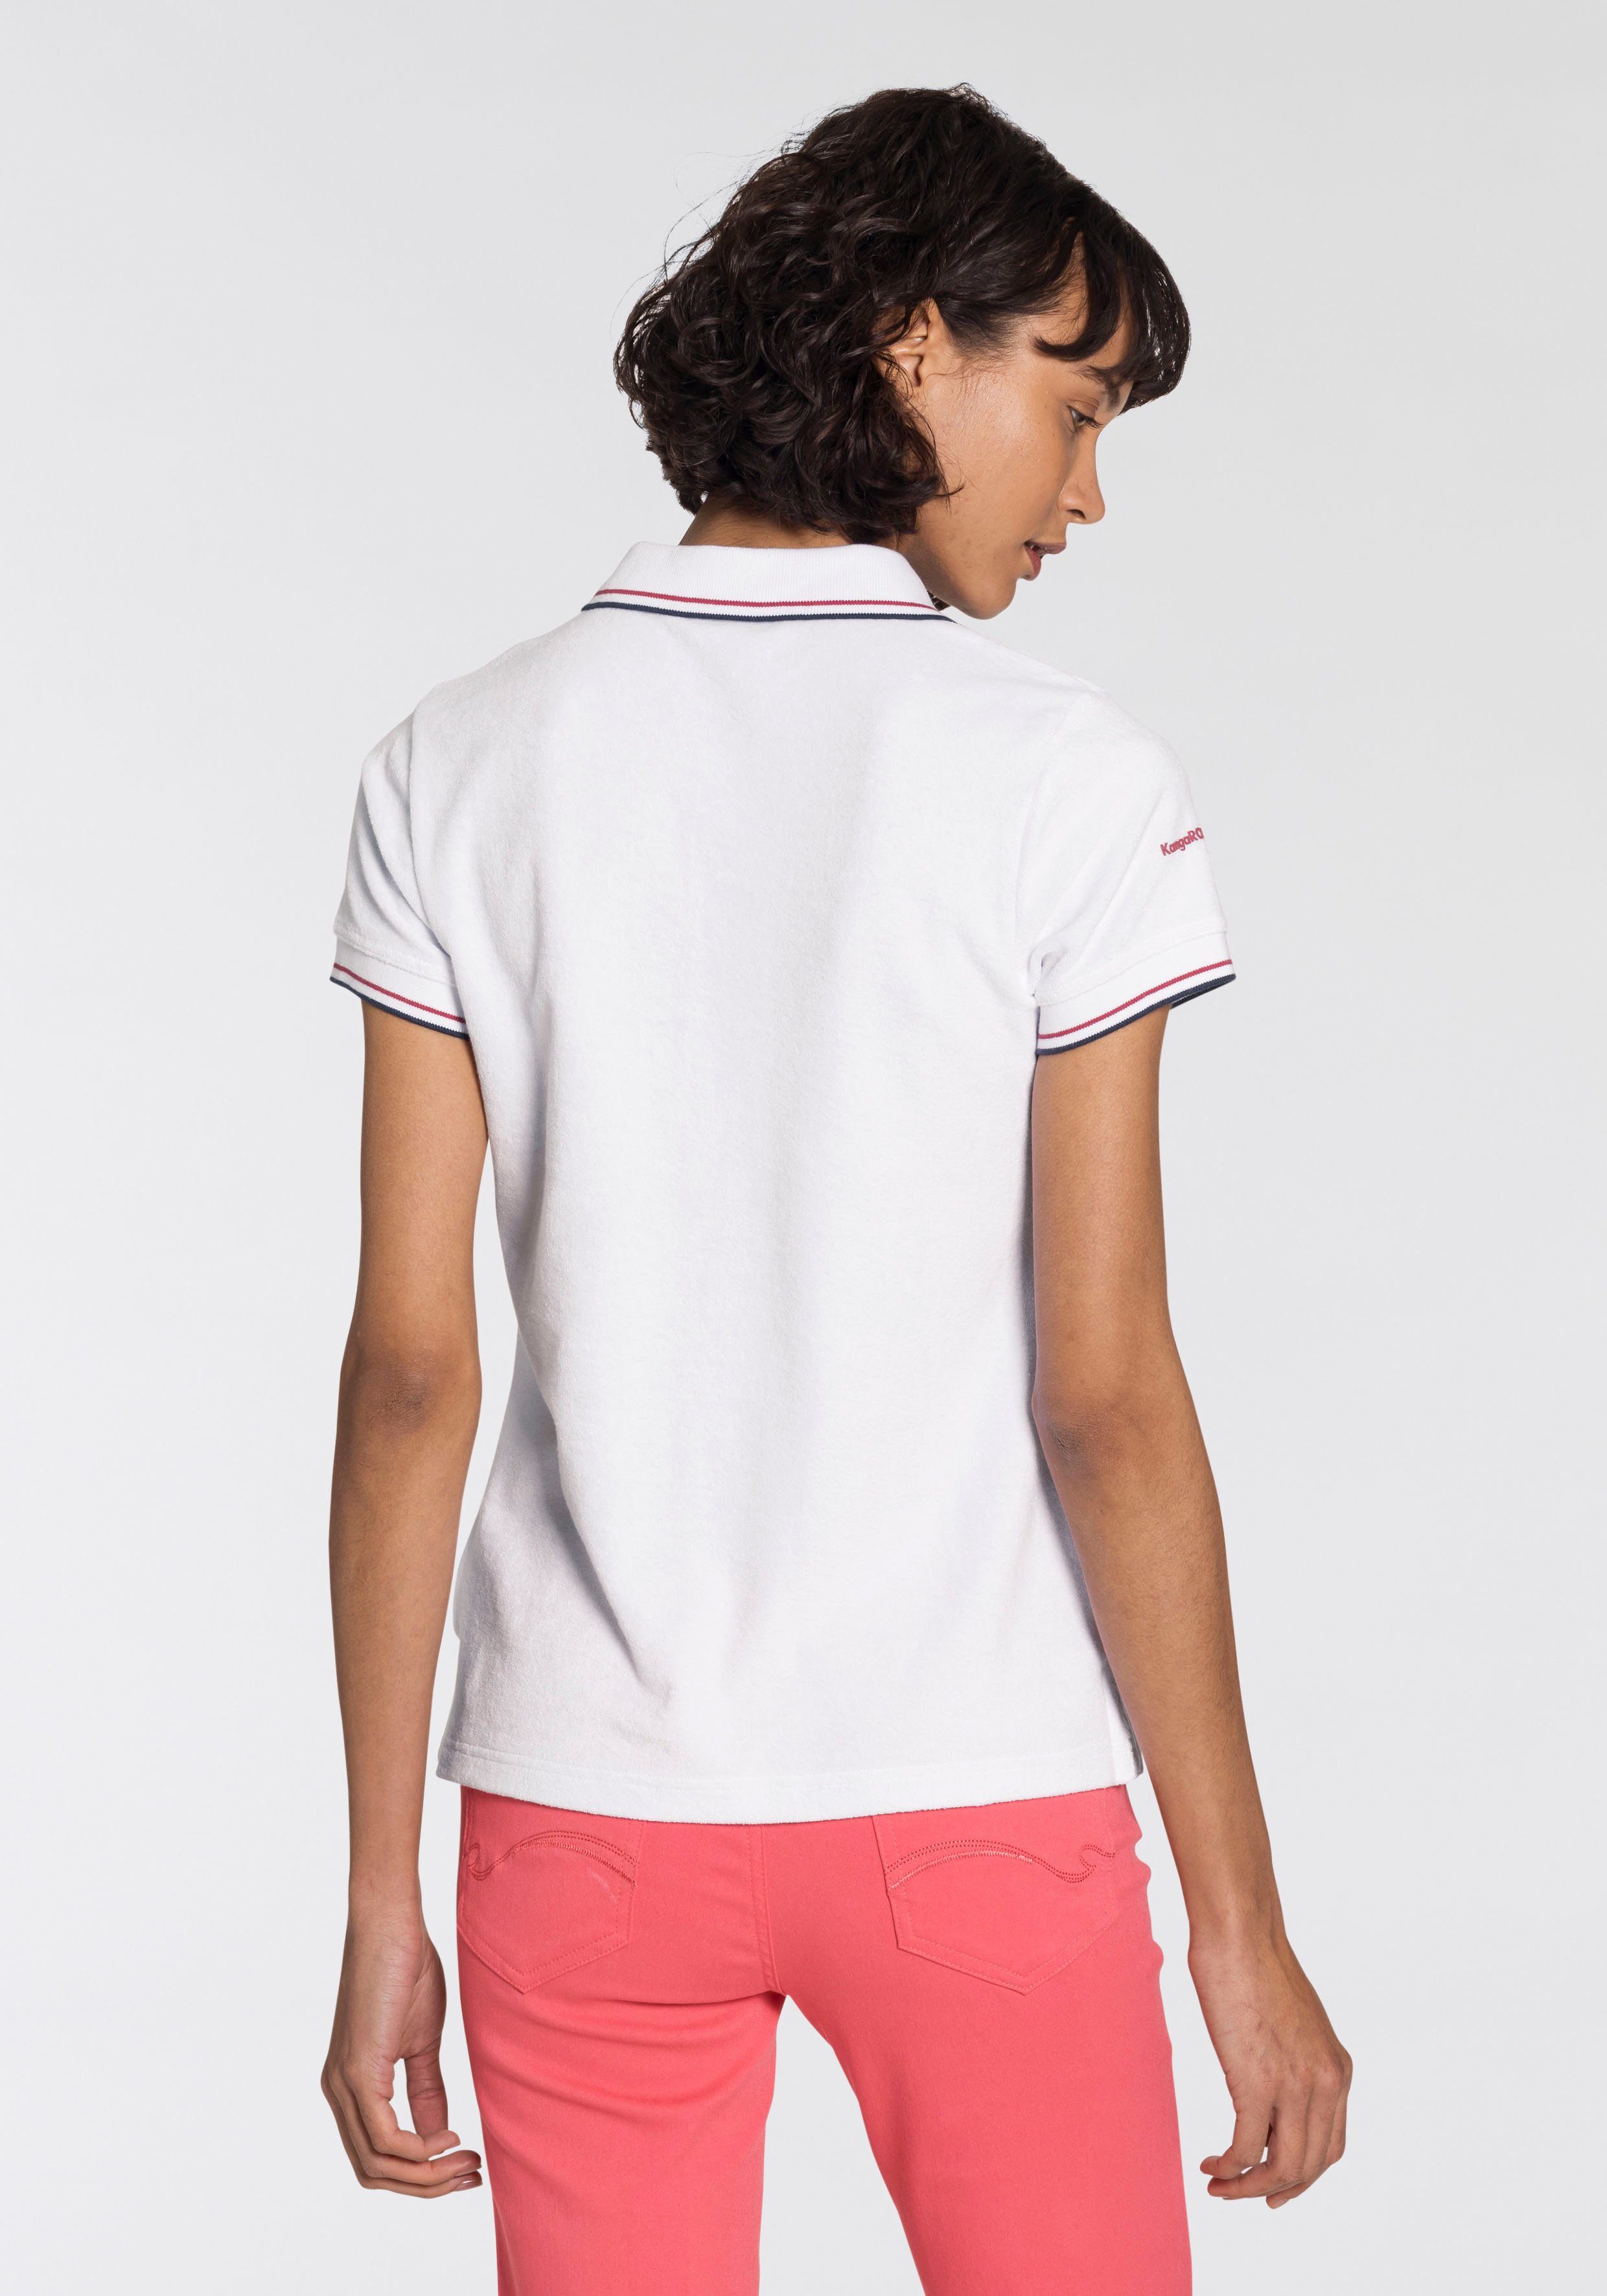 Damen Shirts KangaROOS Poloshirt aus besonders weichem Frottee auch perfekt für den Beach - NEUE KOLLETION